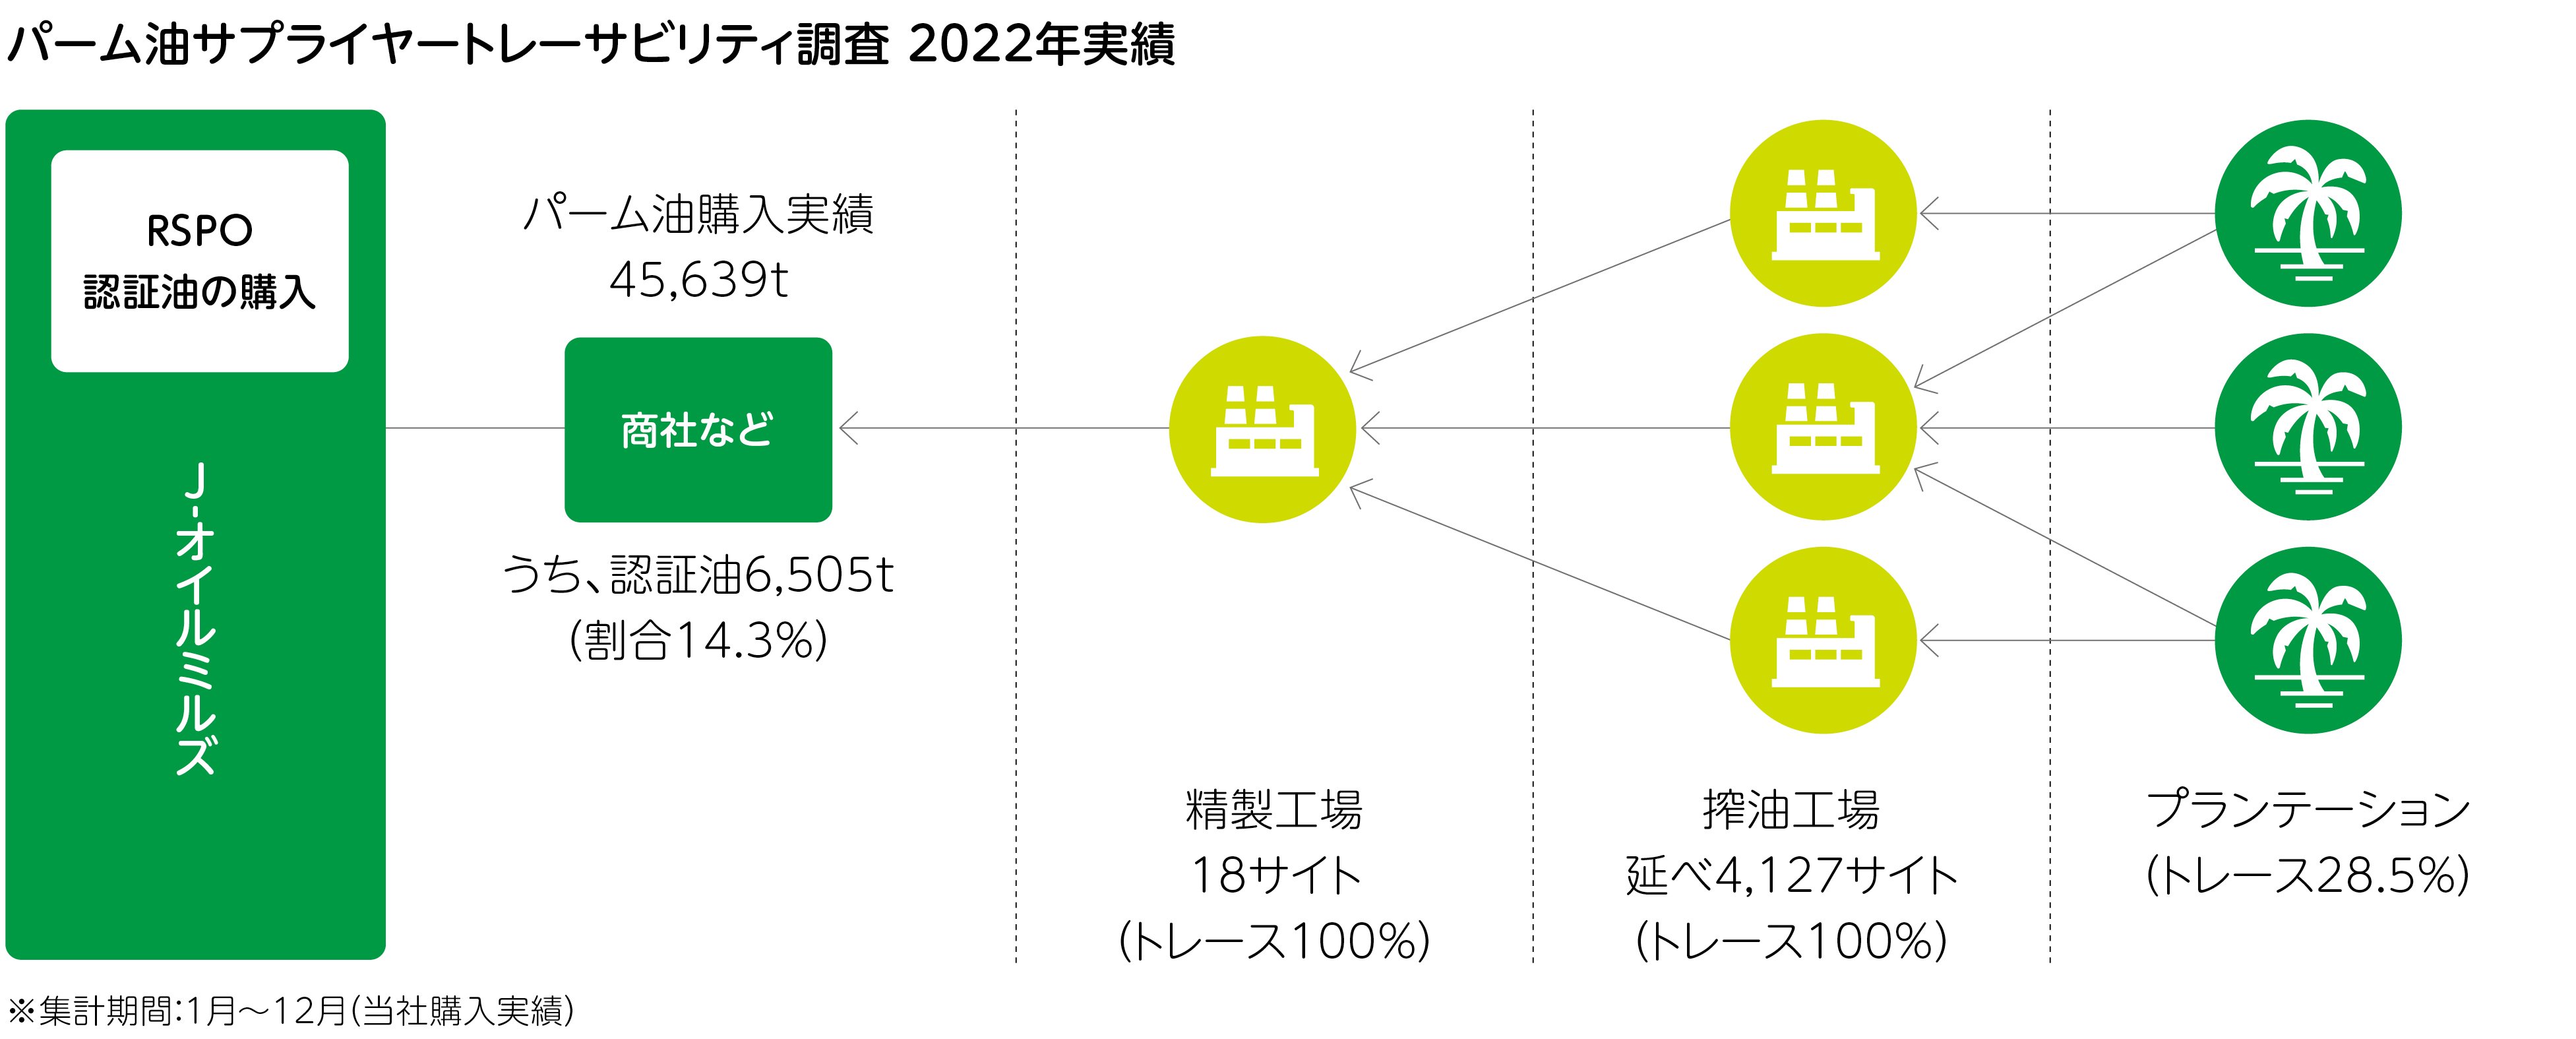 パーム油サプライヤートレーサビリティ調査2022年度実績の図